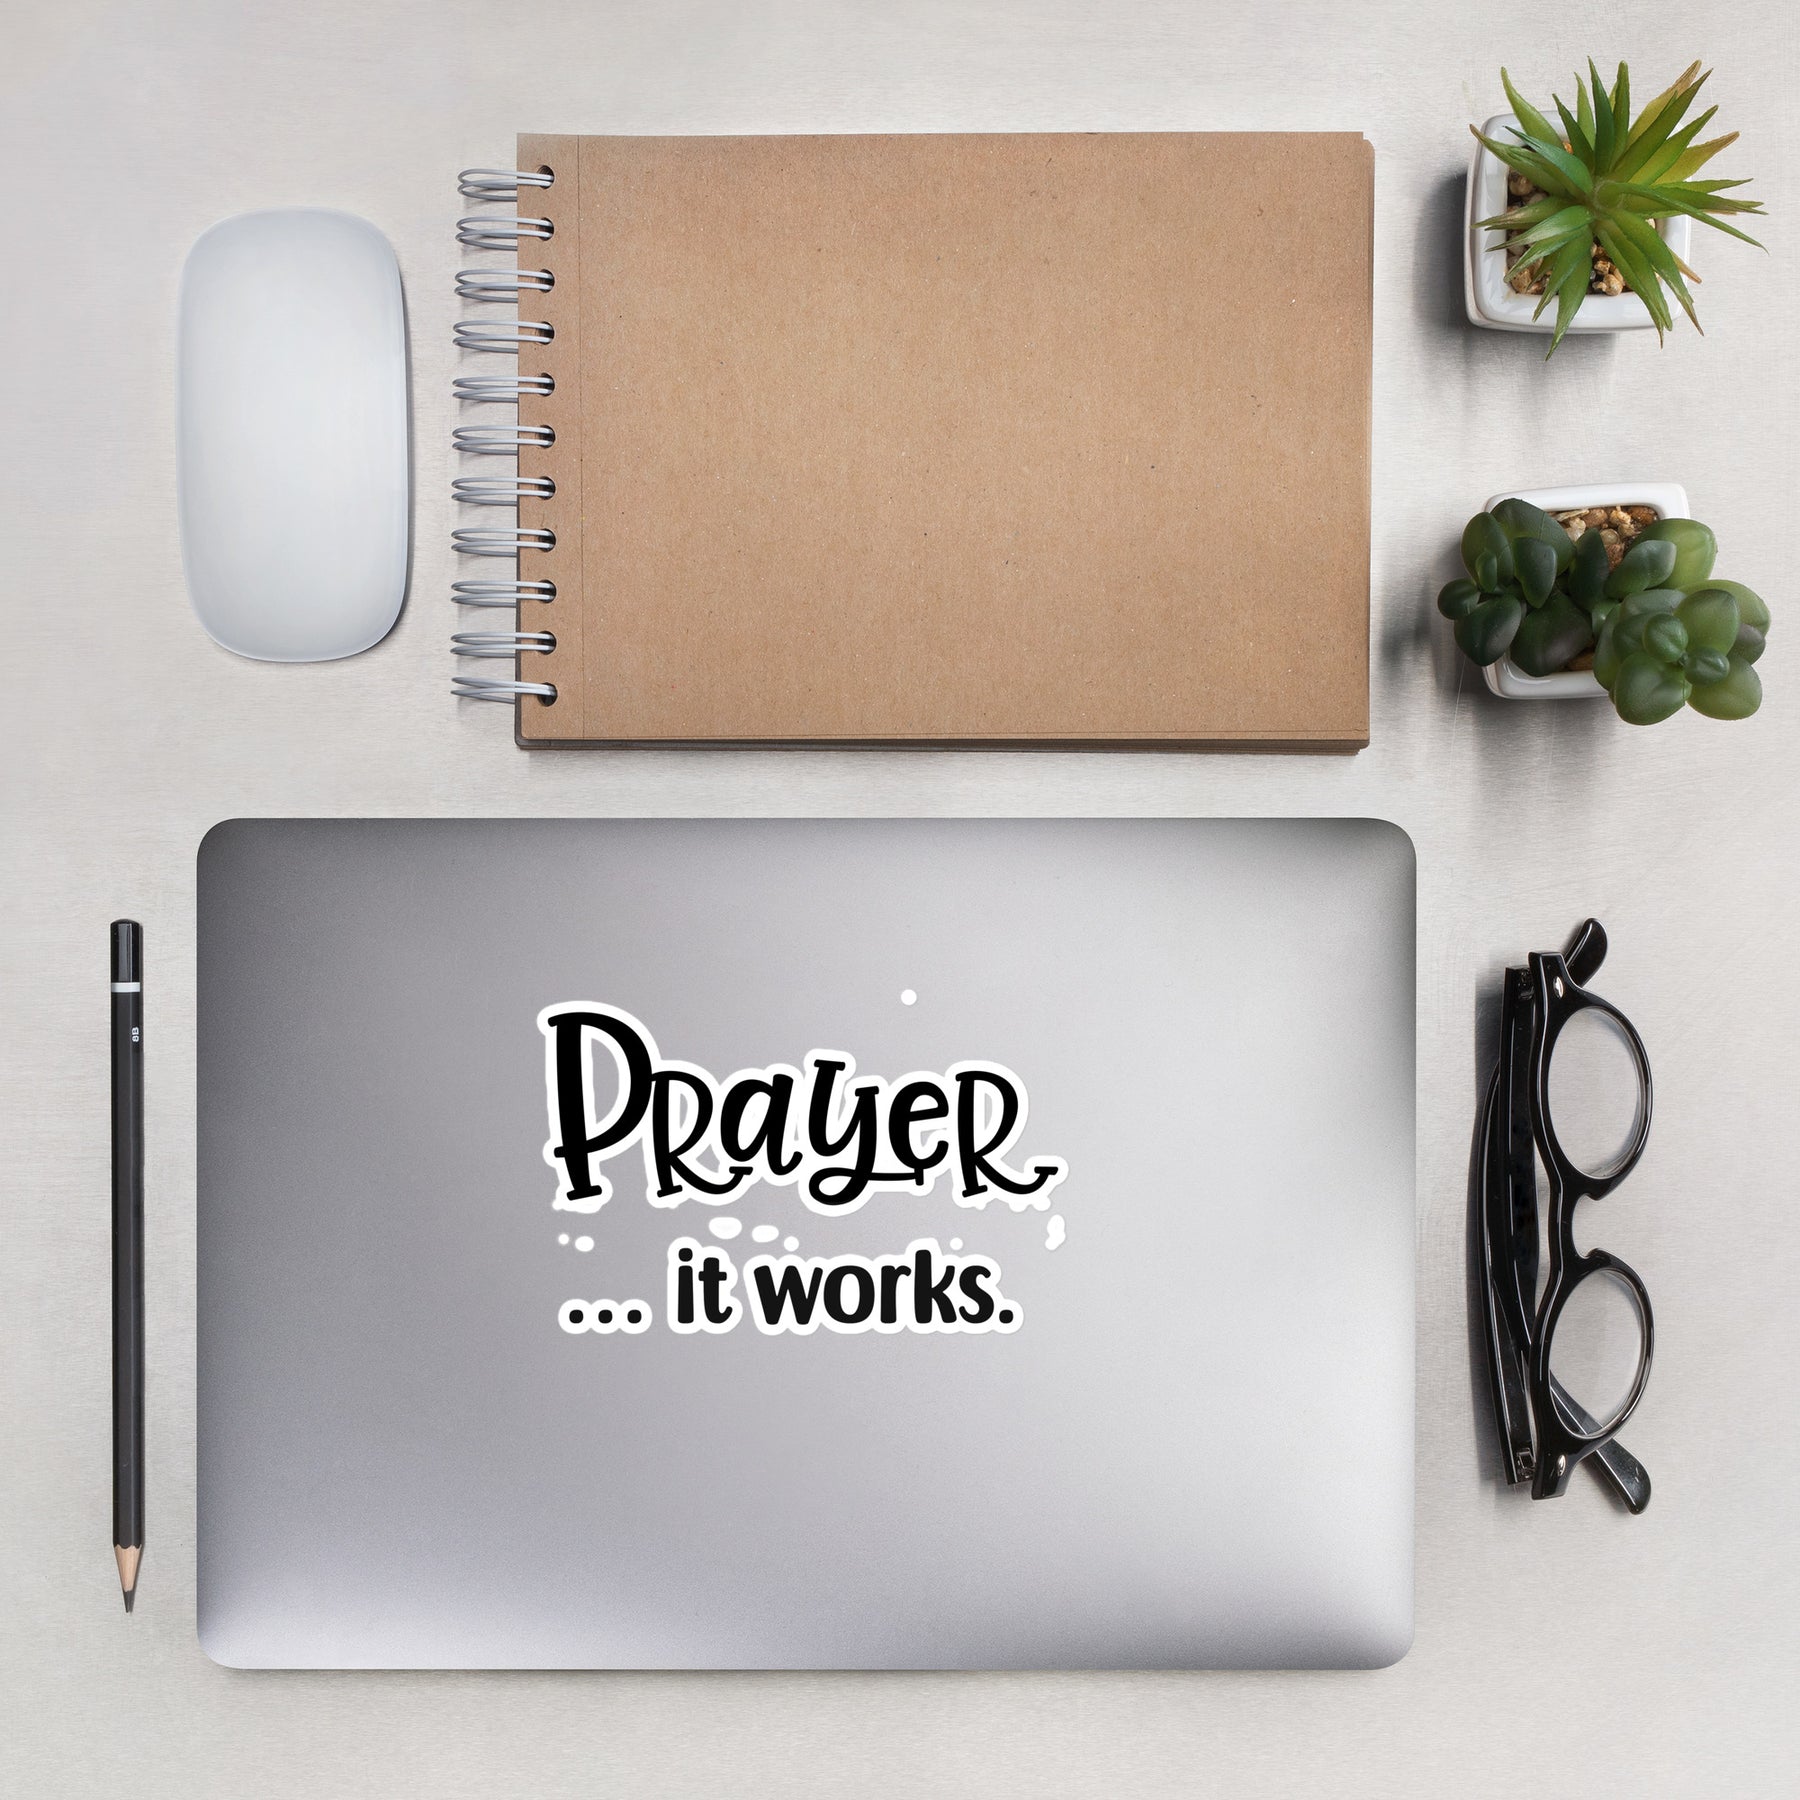 Prayer- it works- Sticker